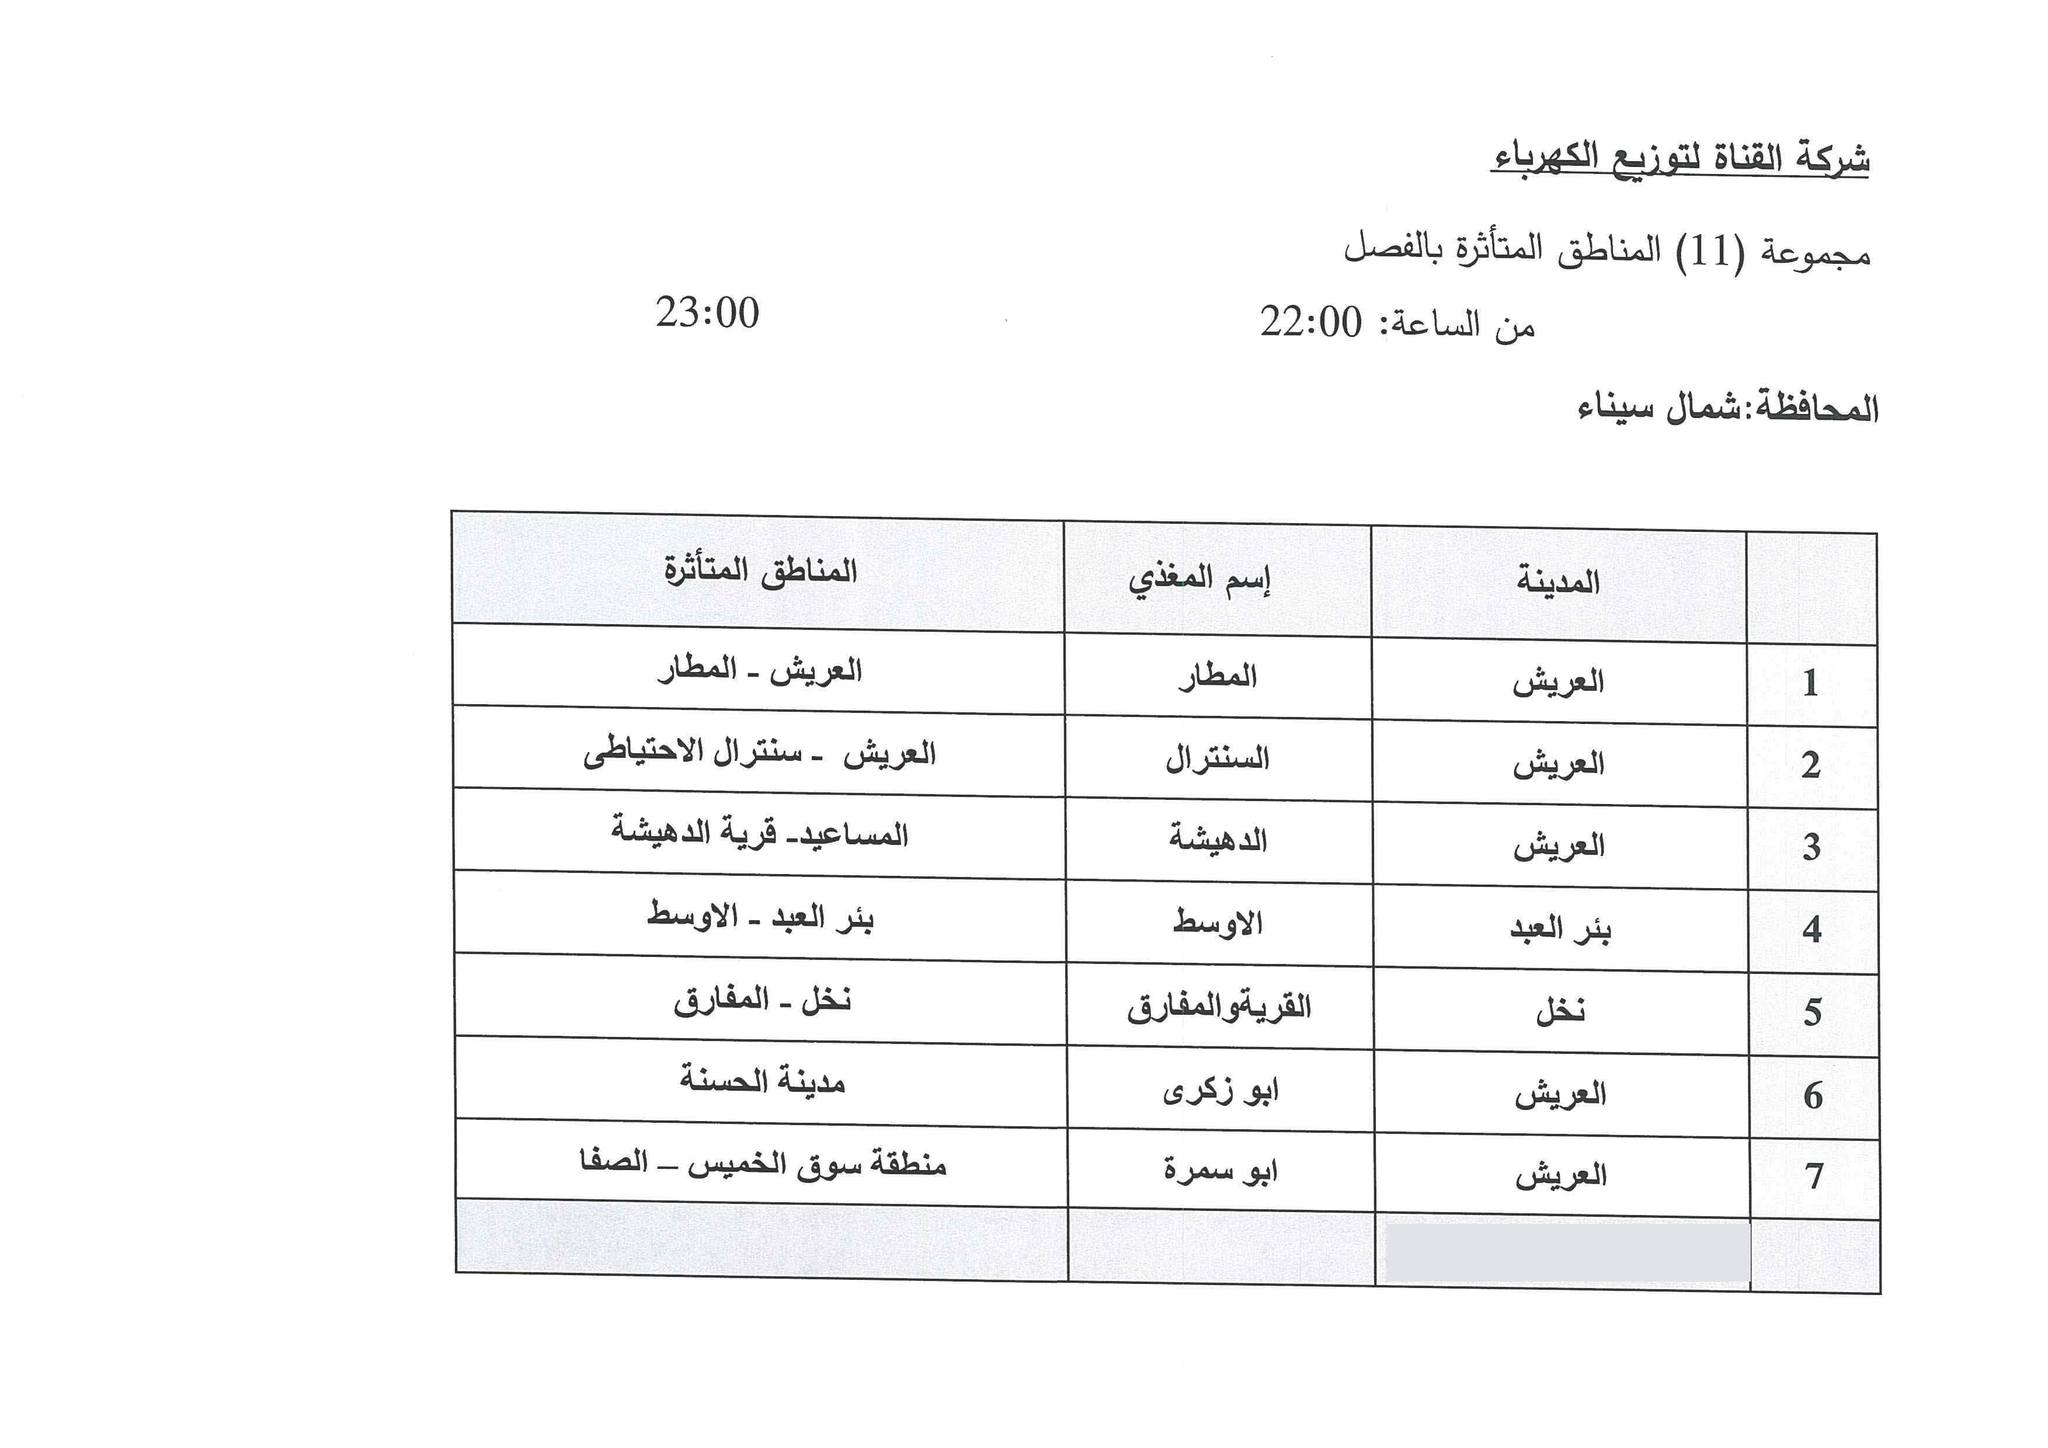 جدول مواعيد تخفيف الأحمال الكهربائية فى محافظة شمال سيناء (12)